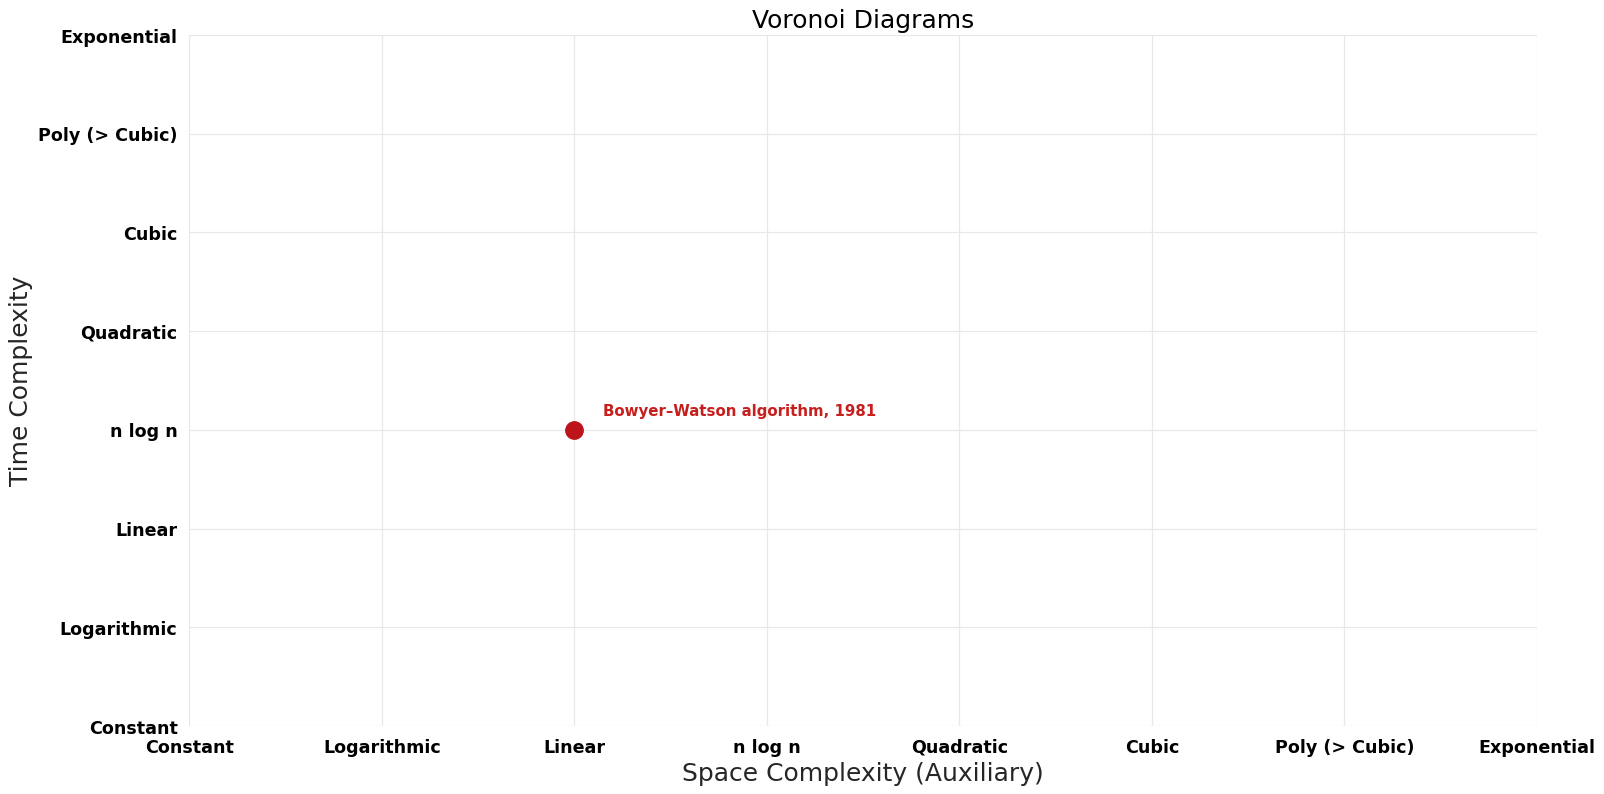 File:Voronoi Diagrams - Pareto Frontier.png